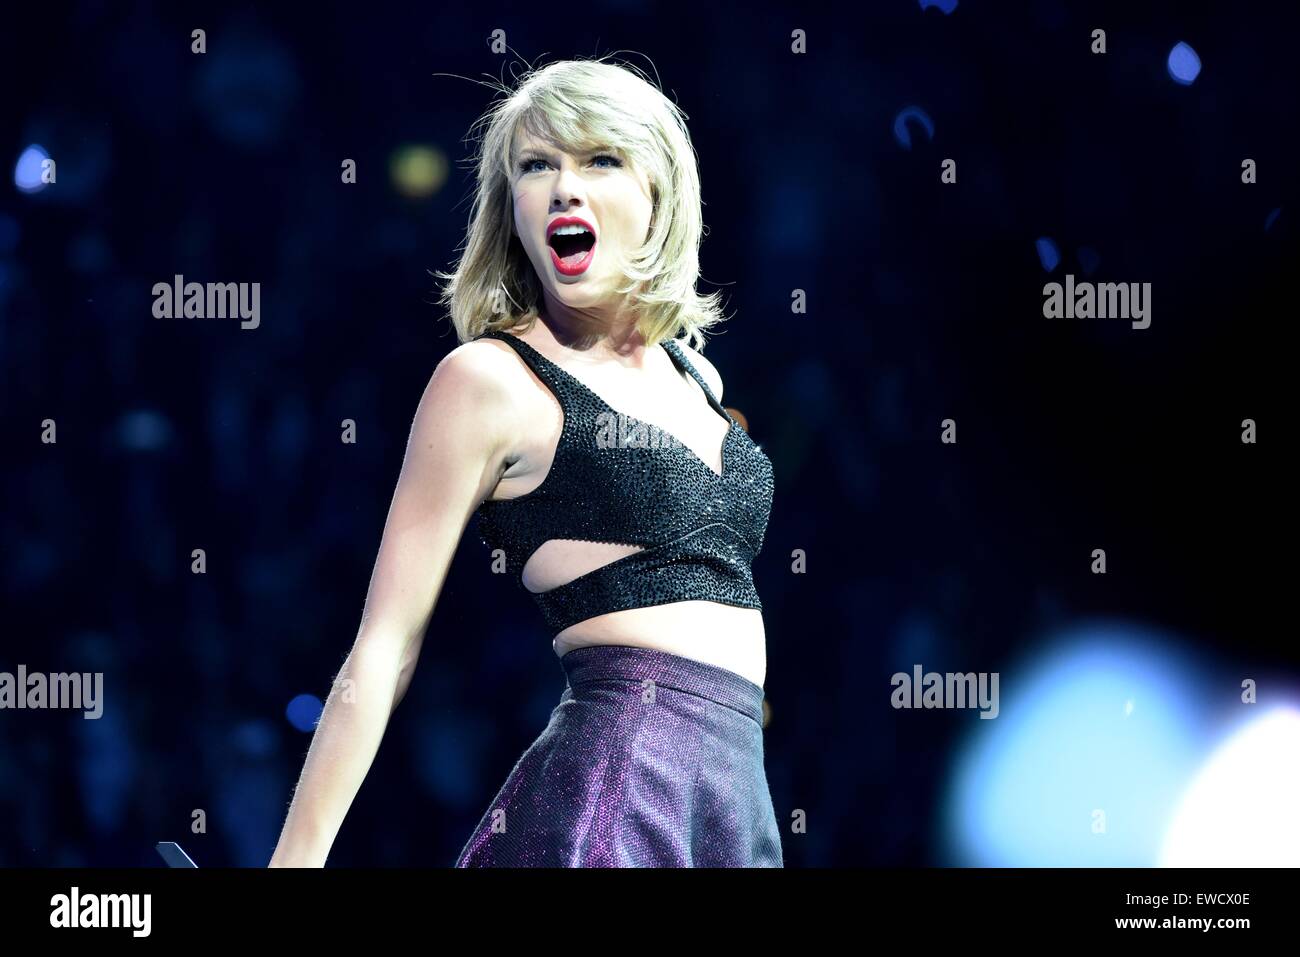 Köln, Deutschland. 19. Juni 2015. US-Sängerin Taylor Swift führt auf der Bühne in Köln, Deutschland, 19. Juni 2015. Foto: JAN KNOFF/Dpa - NO-Draht-SERVICE-/ Dpa/Alamy Live News Stockfoto